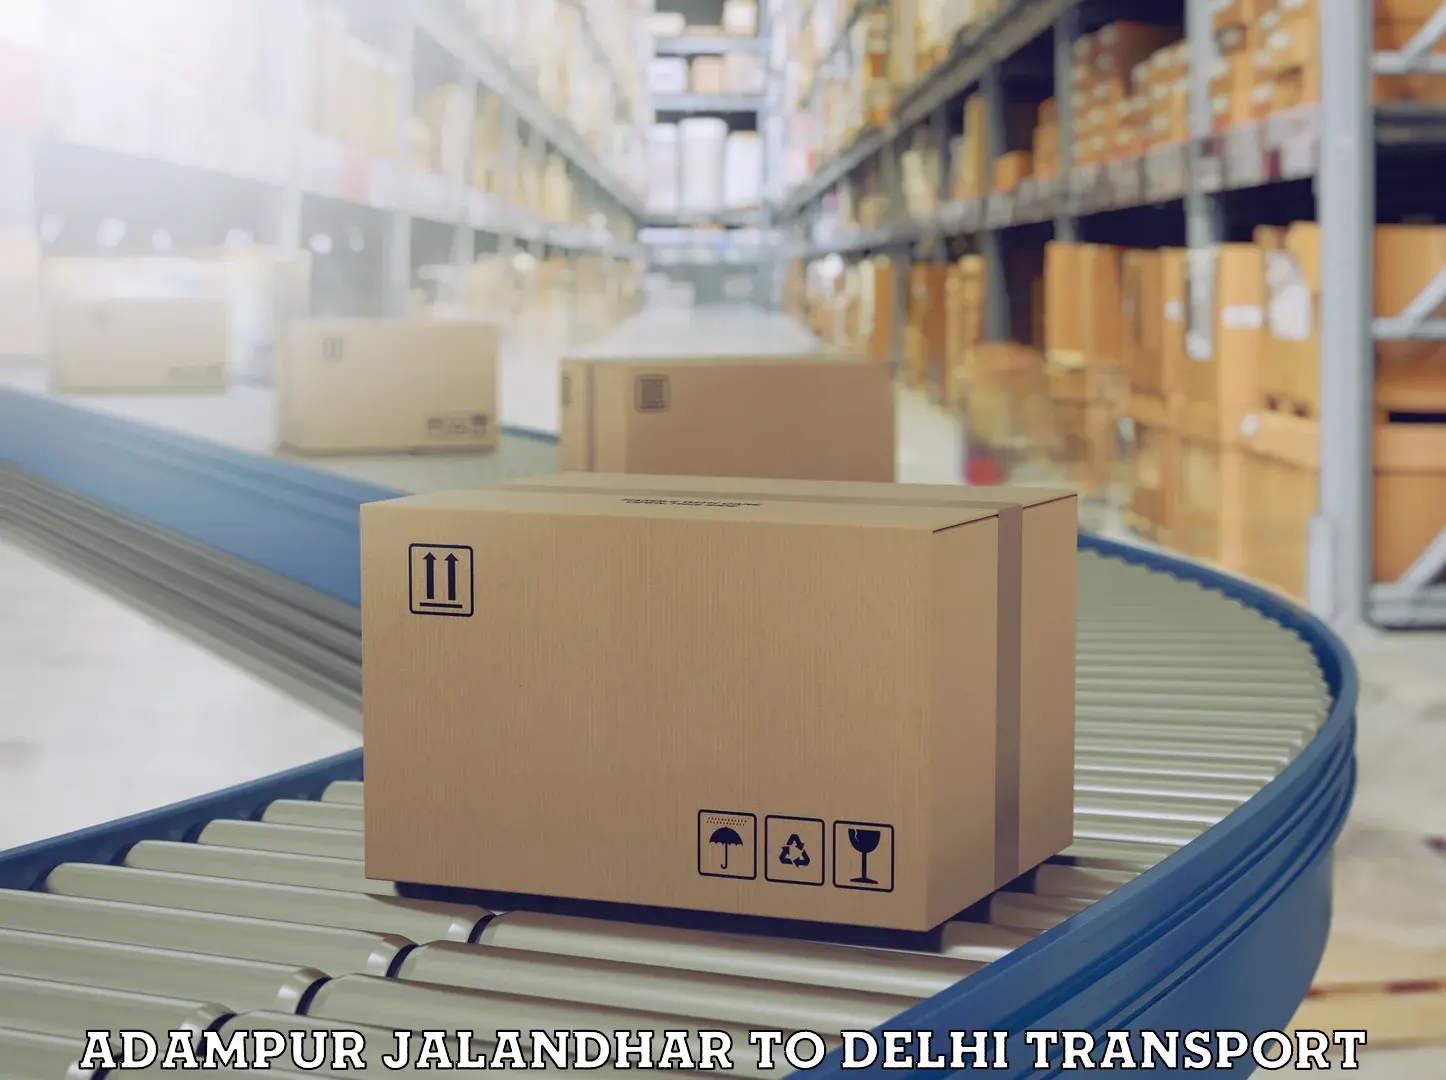 Parcel transport services Adampur Jalandhar to Delhi Technological University DTU